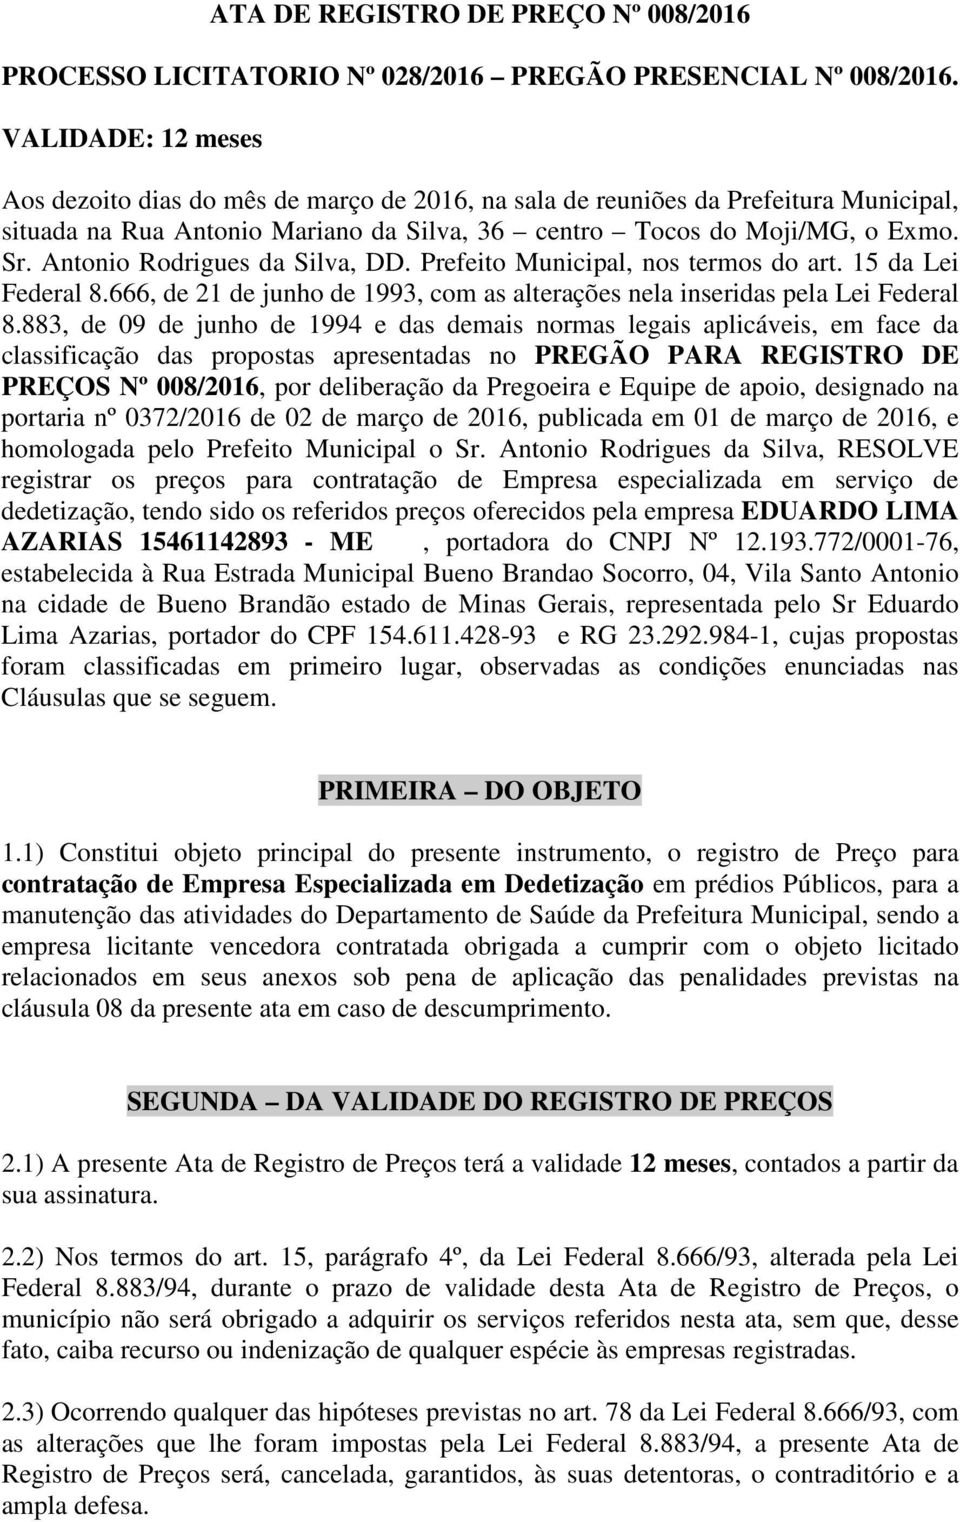 Antonio Rodrigues da Silva, DD. Prefeito Municipal, nos termos do art. 15 da Lei Federal 8.666, de 21 de junho de 1993, com as alterações nela inseridas pela Lei Federal 8.